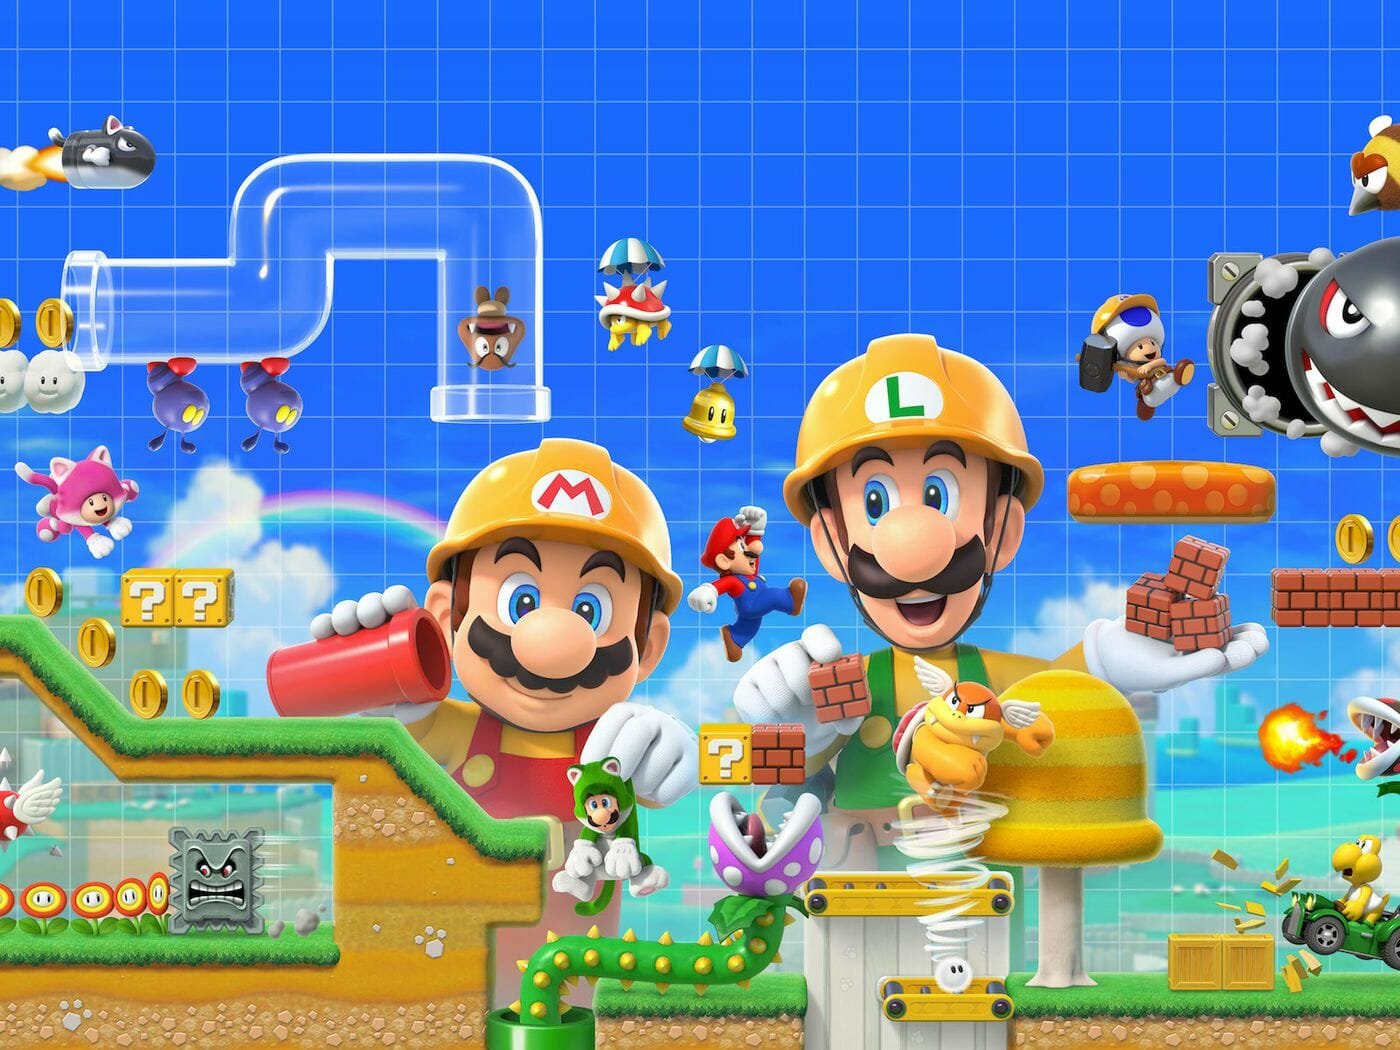 Best switch games: Super Mario maker